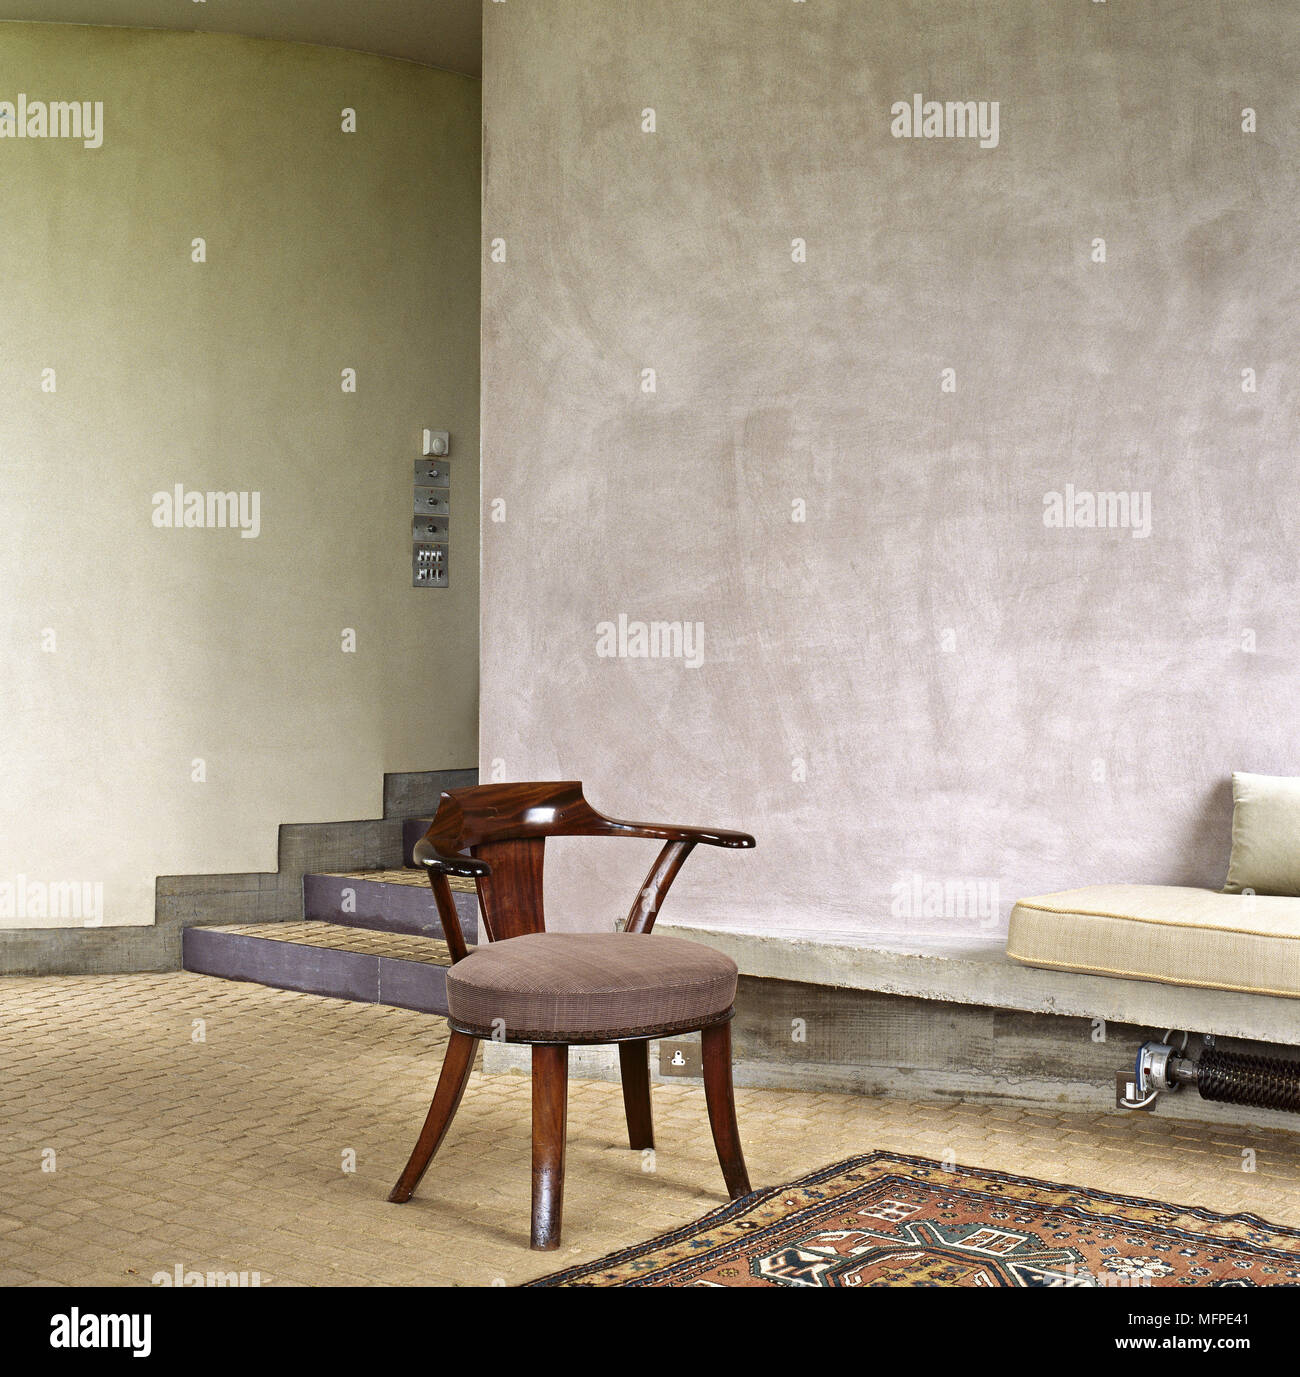 Chaise en bois au centre de la chambre contemporaine avec murs en plâtre lisse Banque D'Images